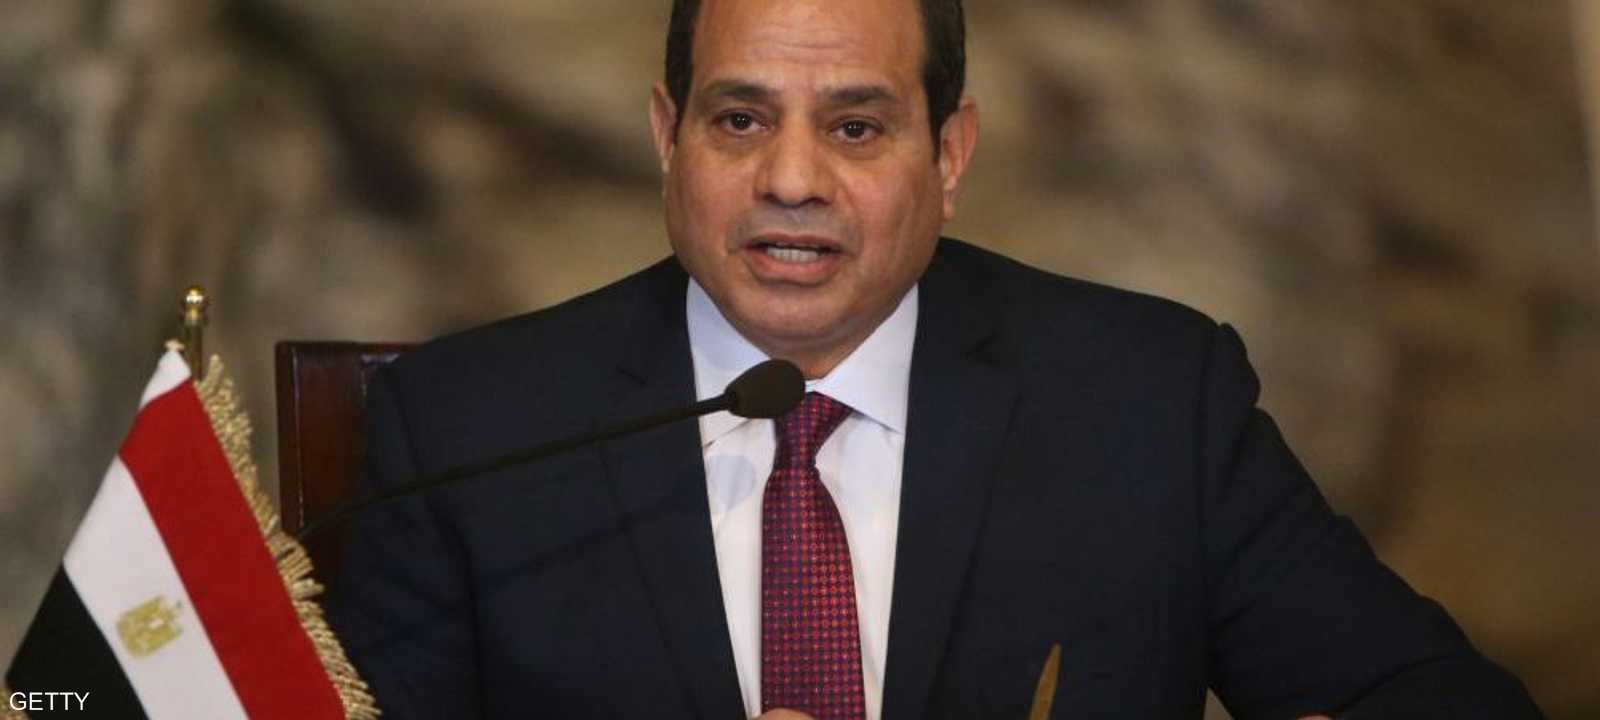 الرئيس المصري عبد الفتاح السيسي. أرشيف